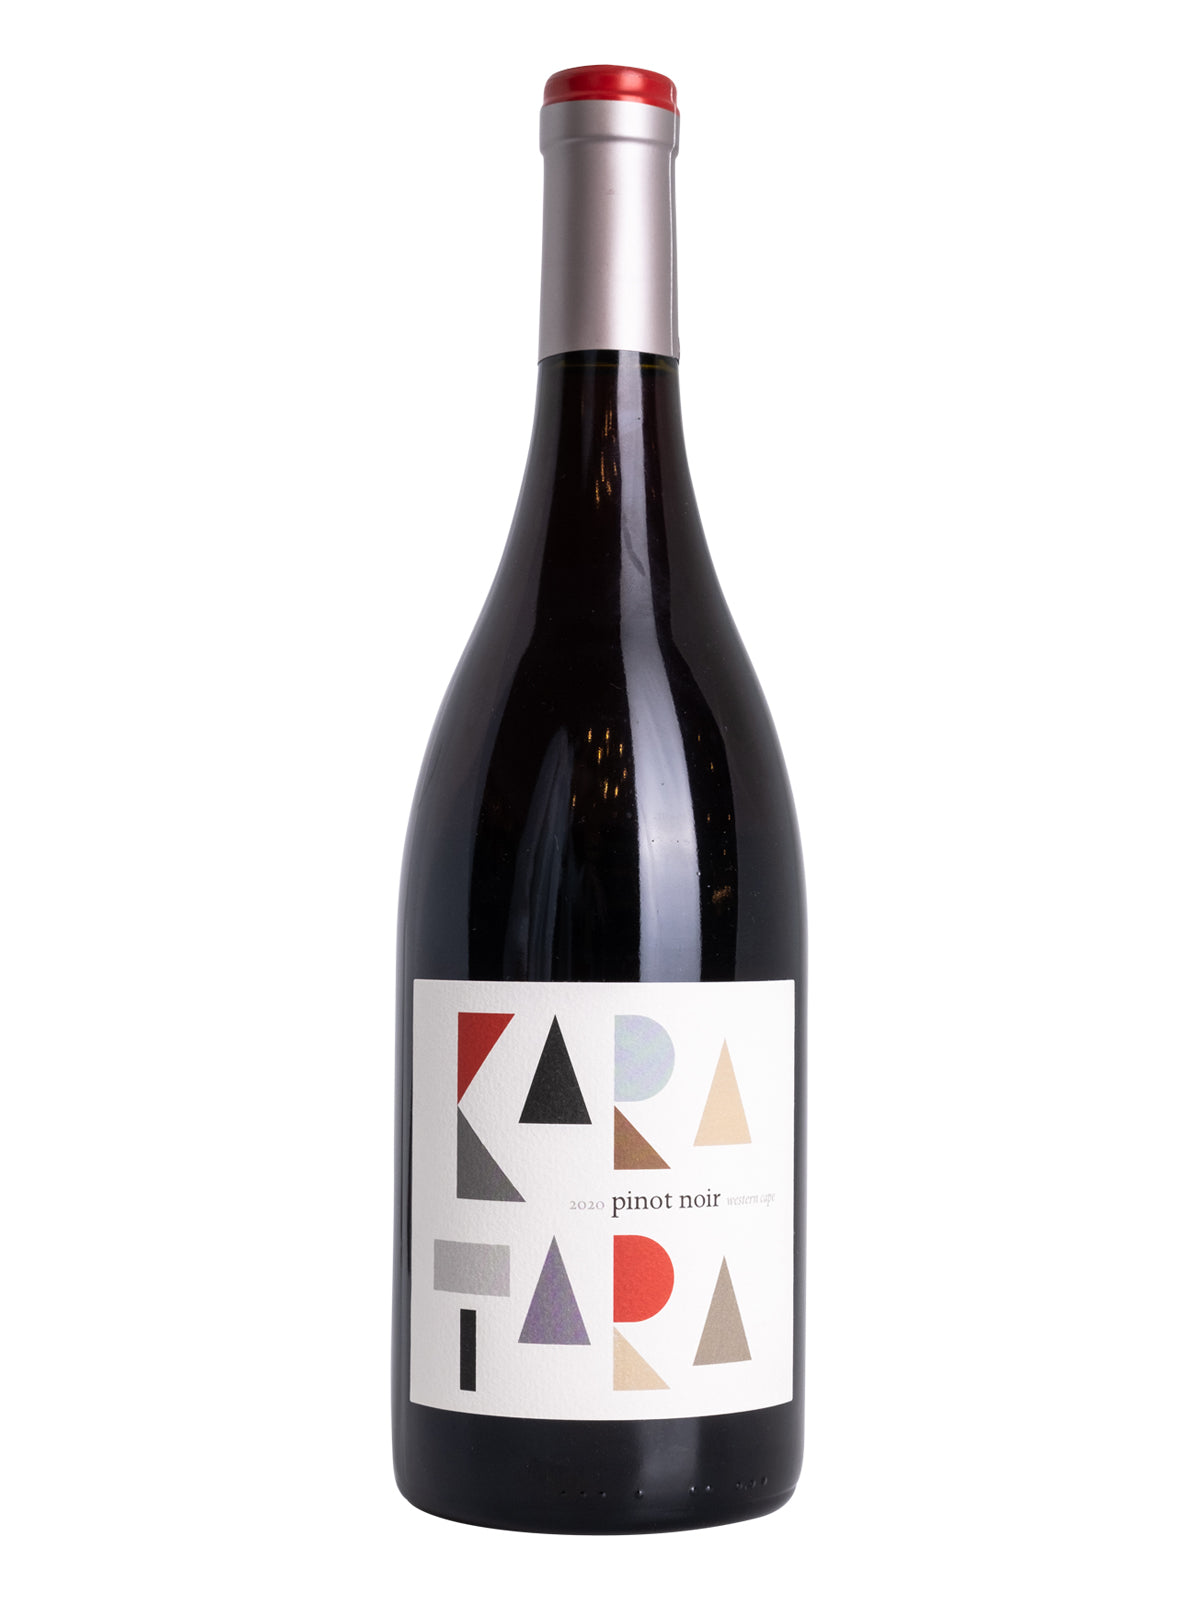 *2R* 2020 Kara-Tara Pinot Noir (Western Cape, SA)